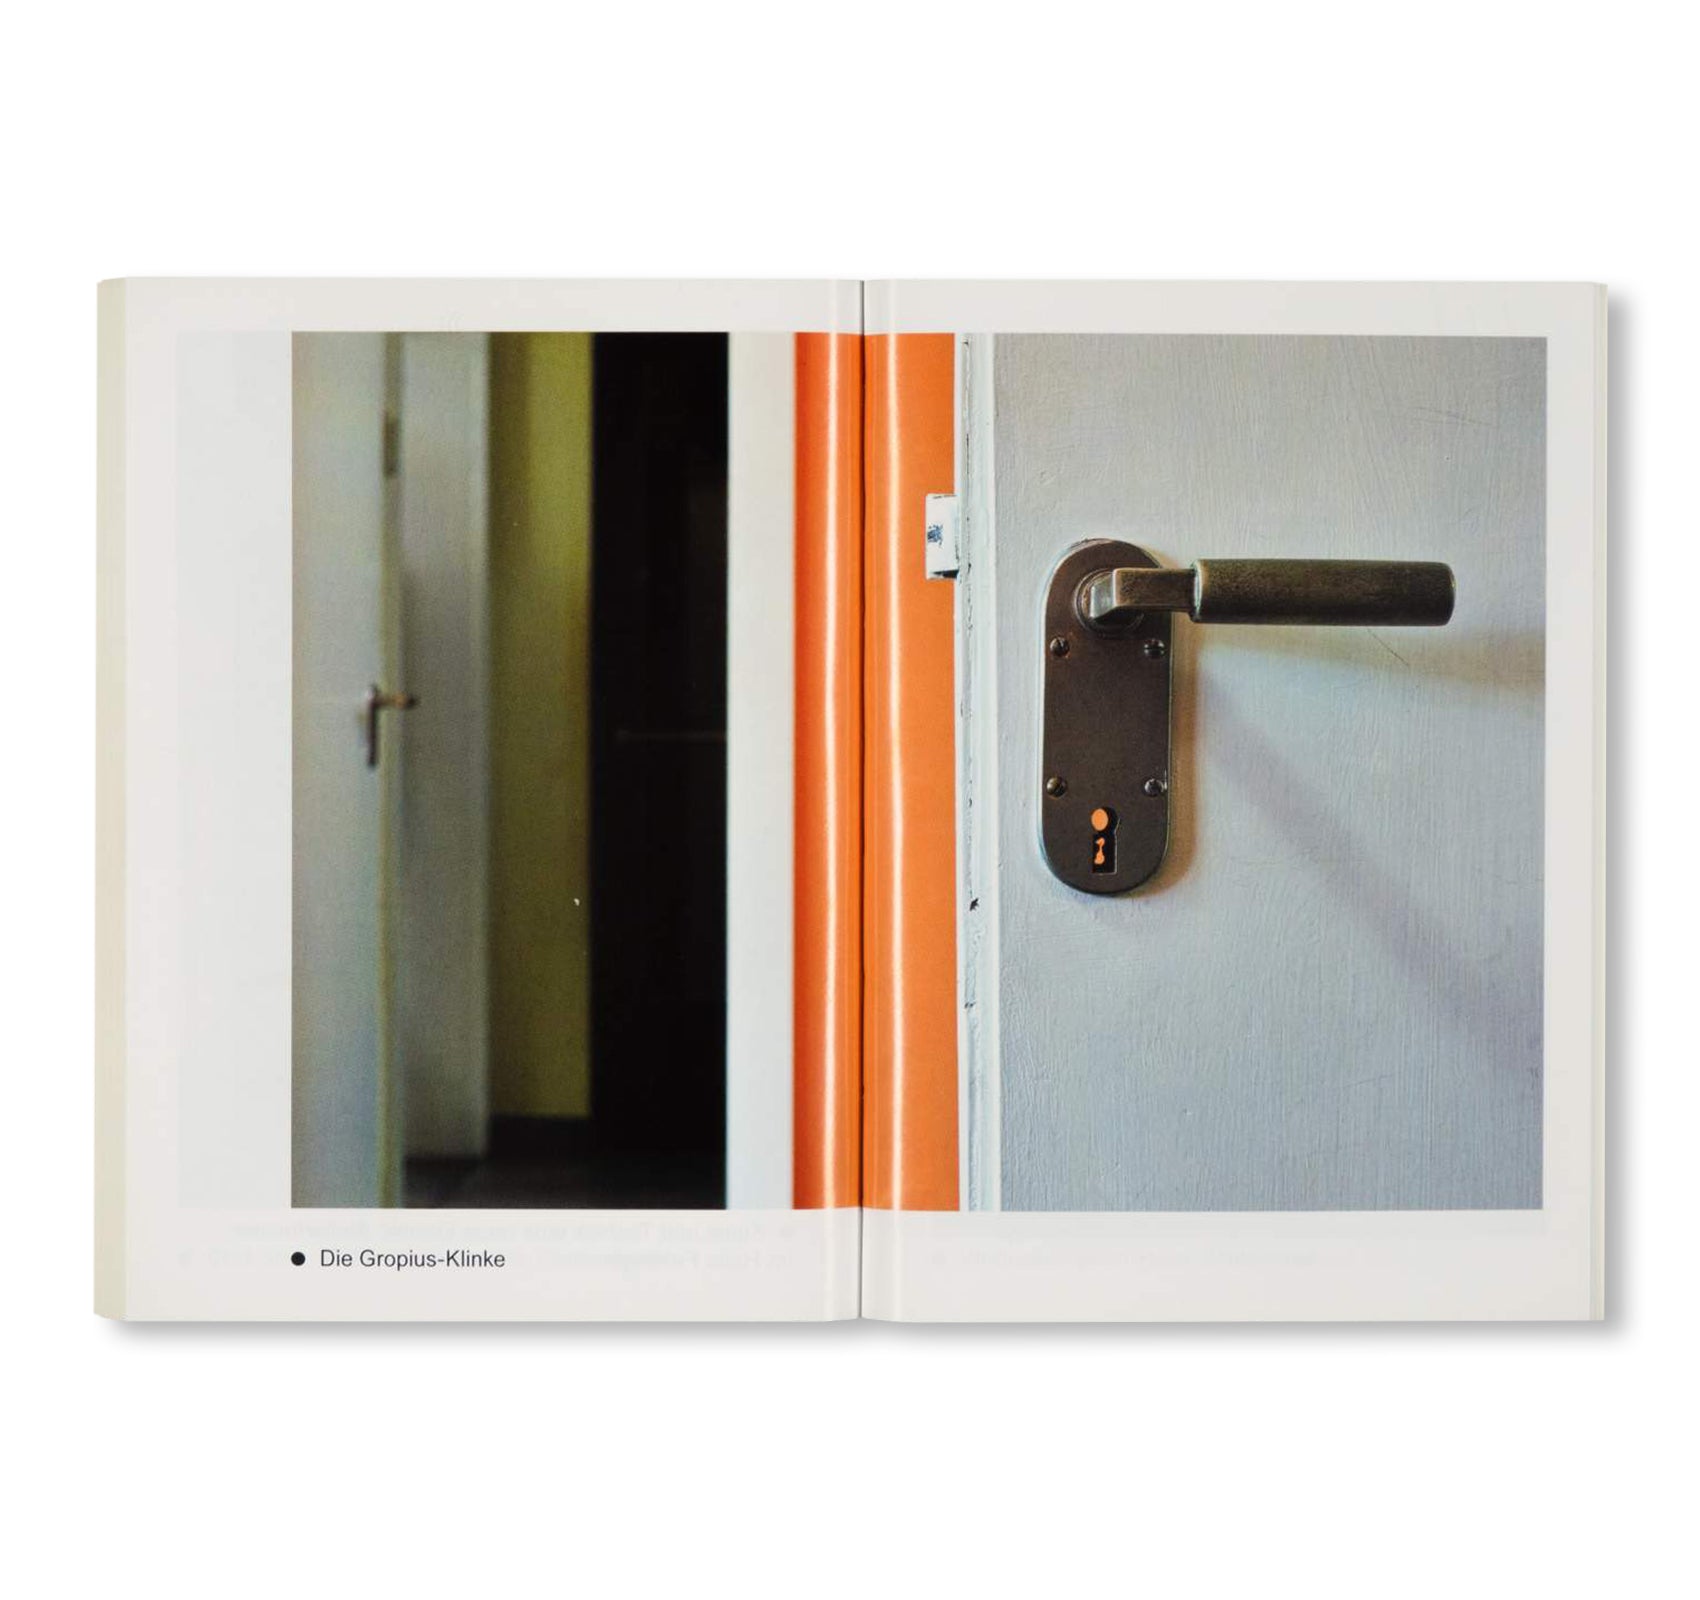 DIE MEISTERHÄUSER IN DESSAU / Bauhaus Paperback 10 by Stiftung Bauhaus Dessau [GERMAN EDITION]